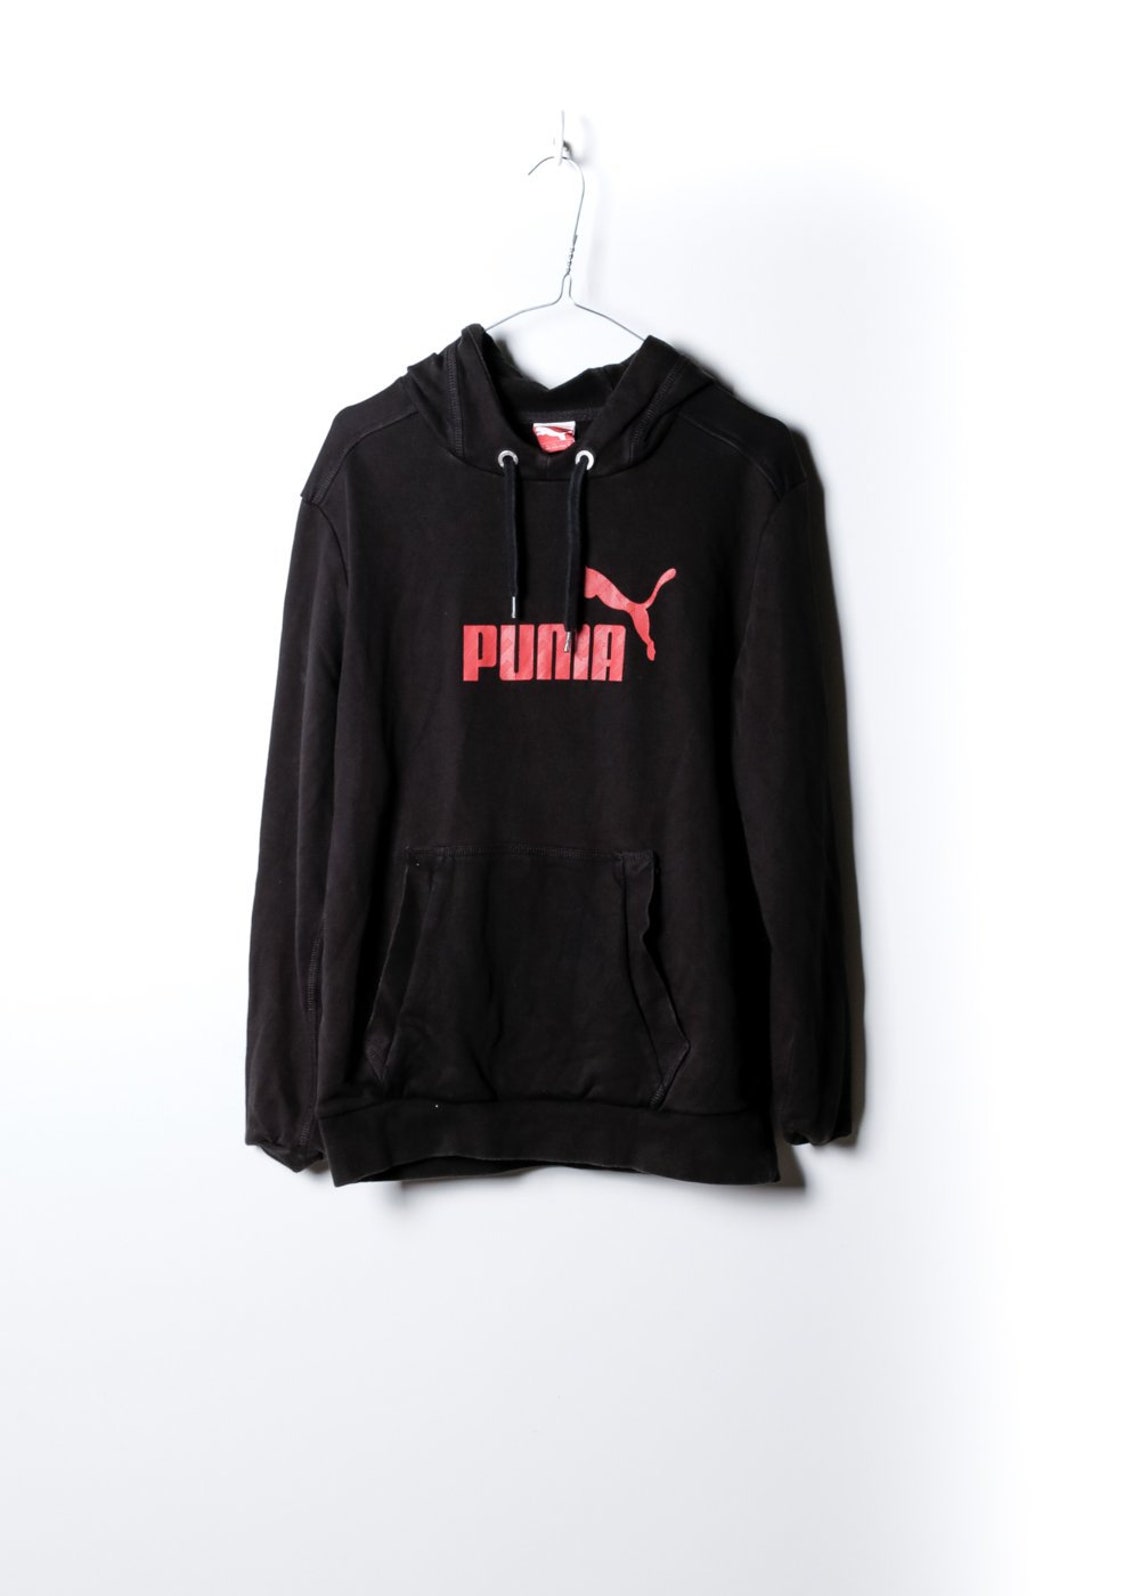 Puma Women's Hooded Sweater in Black | Etsy